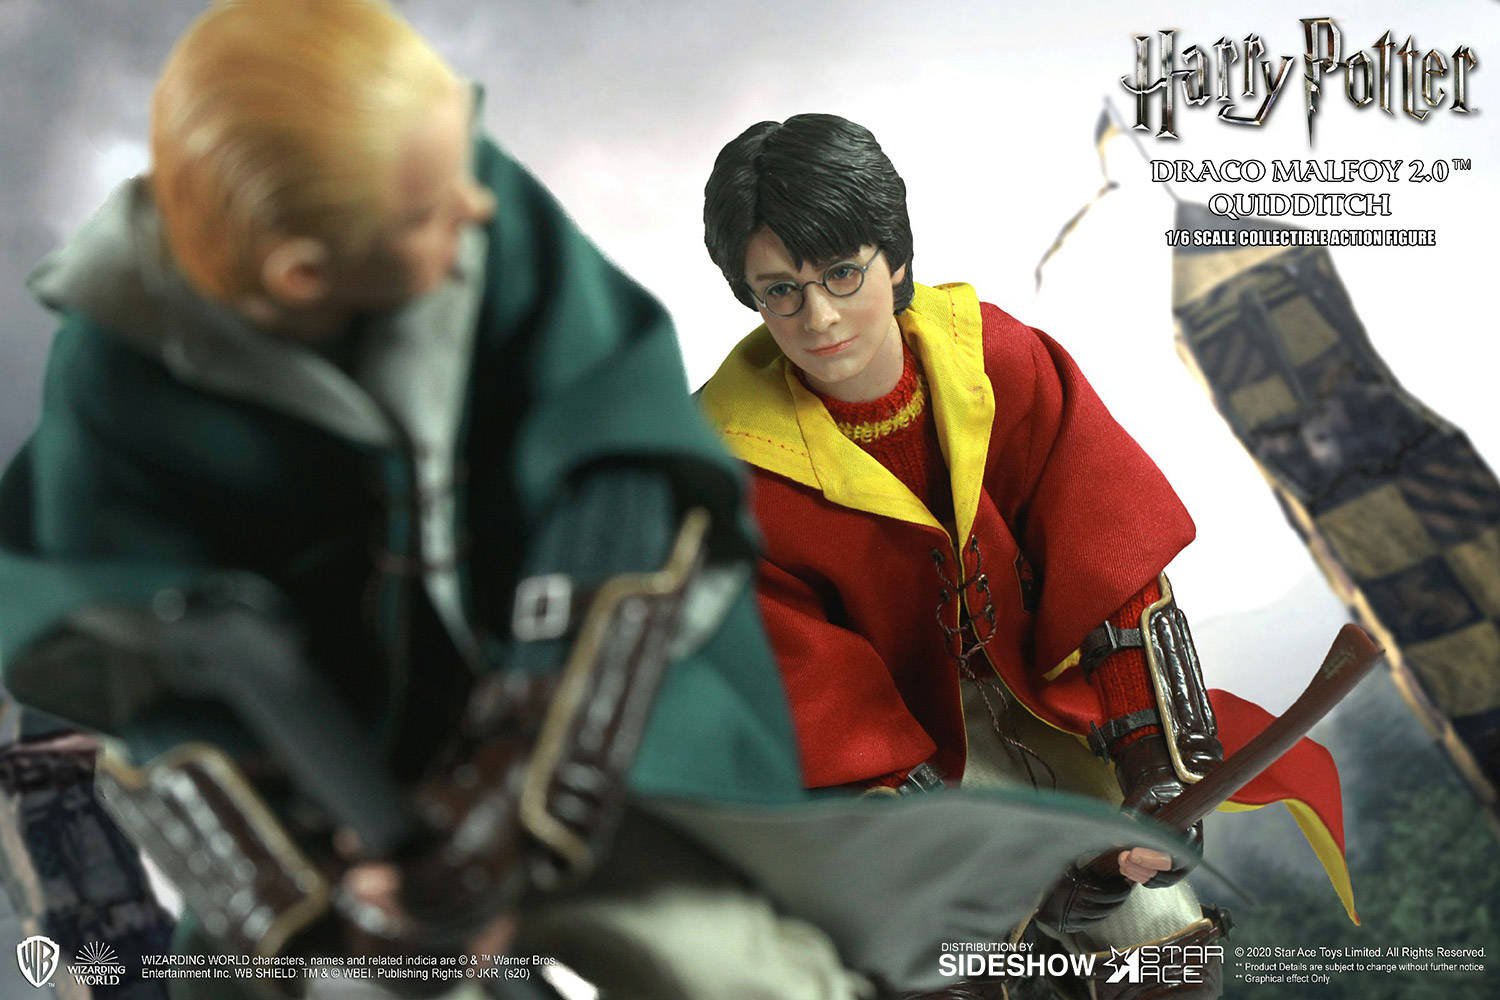 Immagine di Harry Potter &amp; Draco Malfoy, due nuove figure da Star Ace